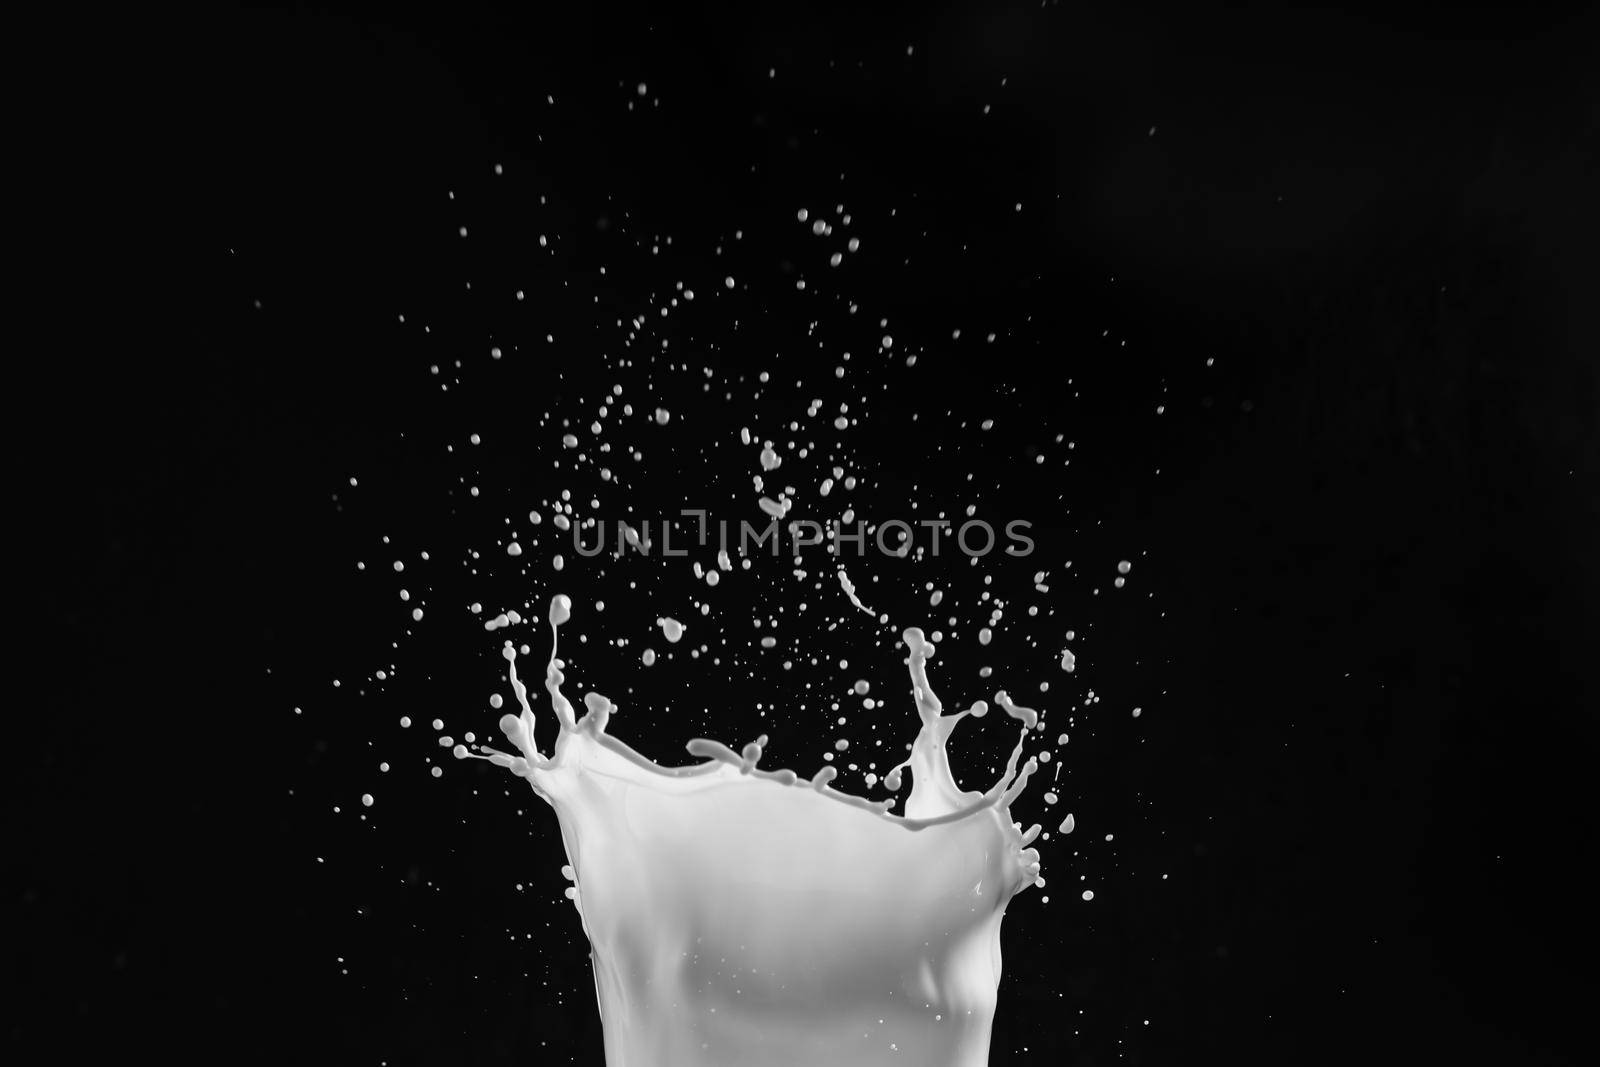 Milk or white liquid splash by Wasant